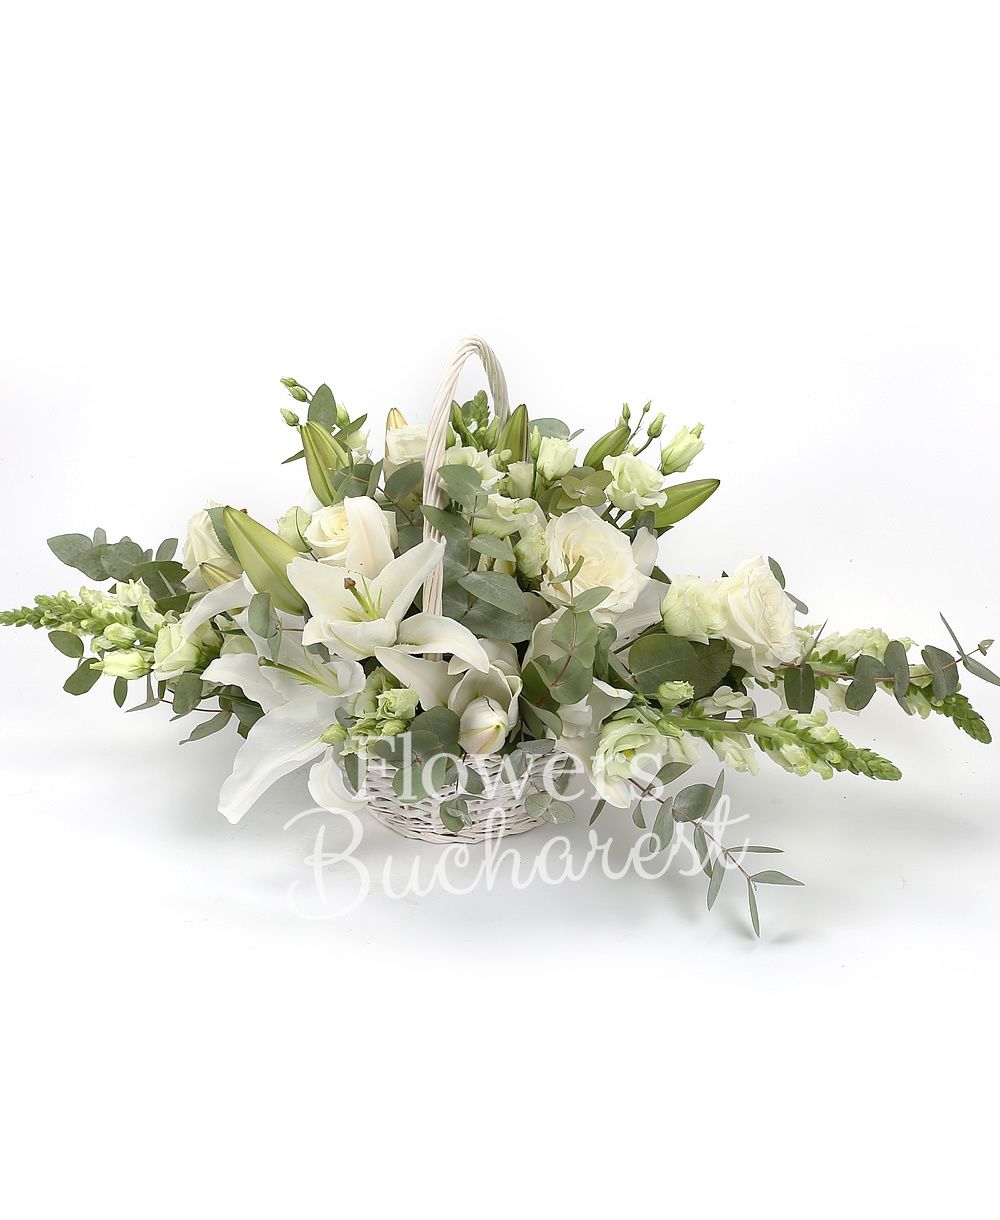 3 white lilies, 5 white roses, 7 white lisianthus, 7 white antirrhinum, greenery